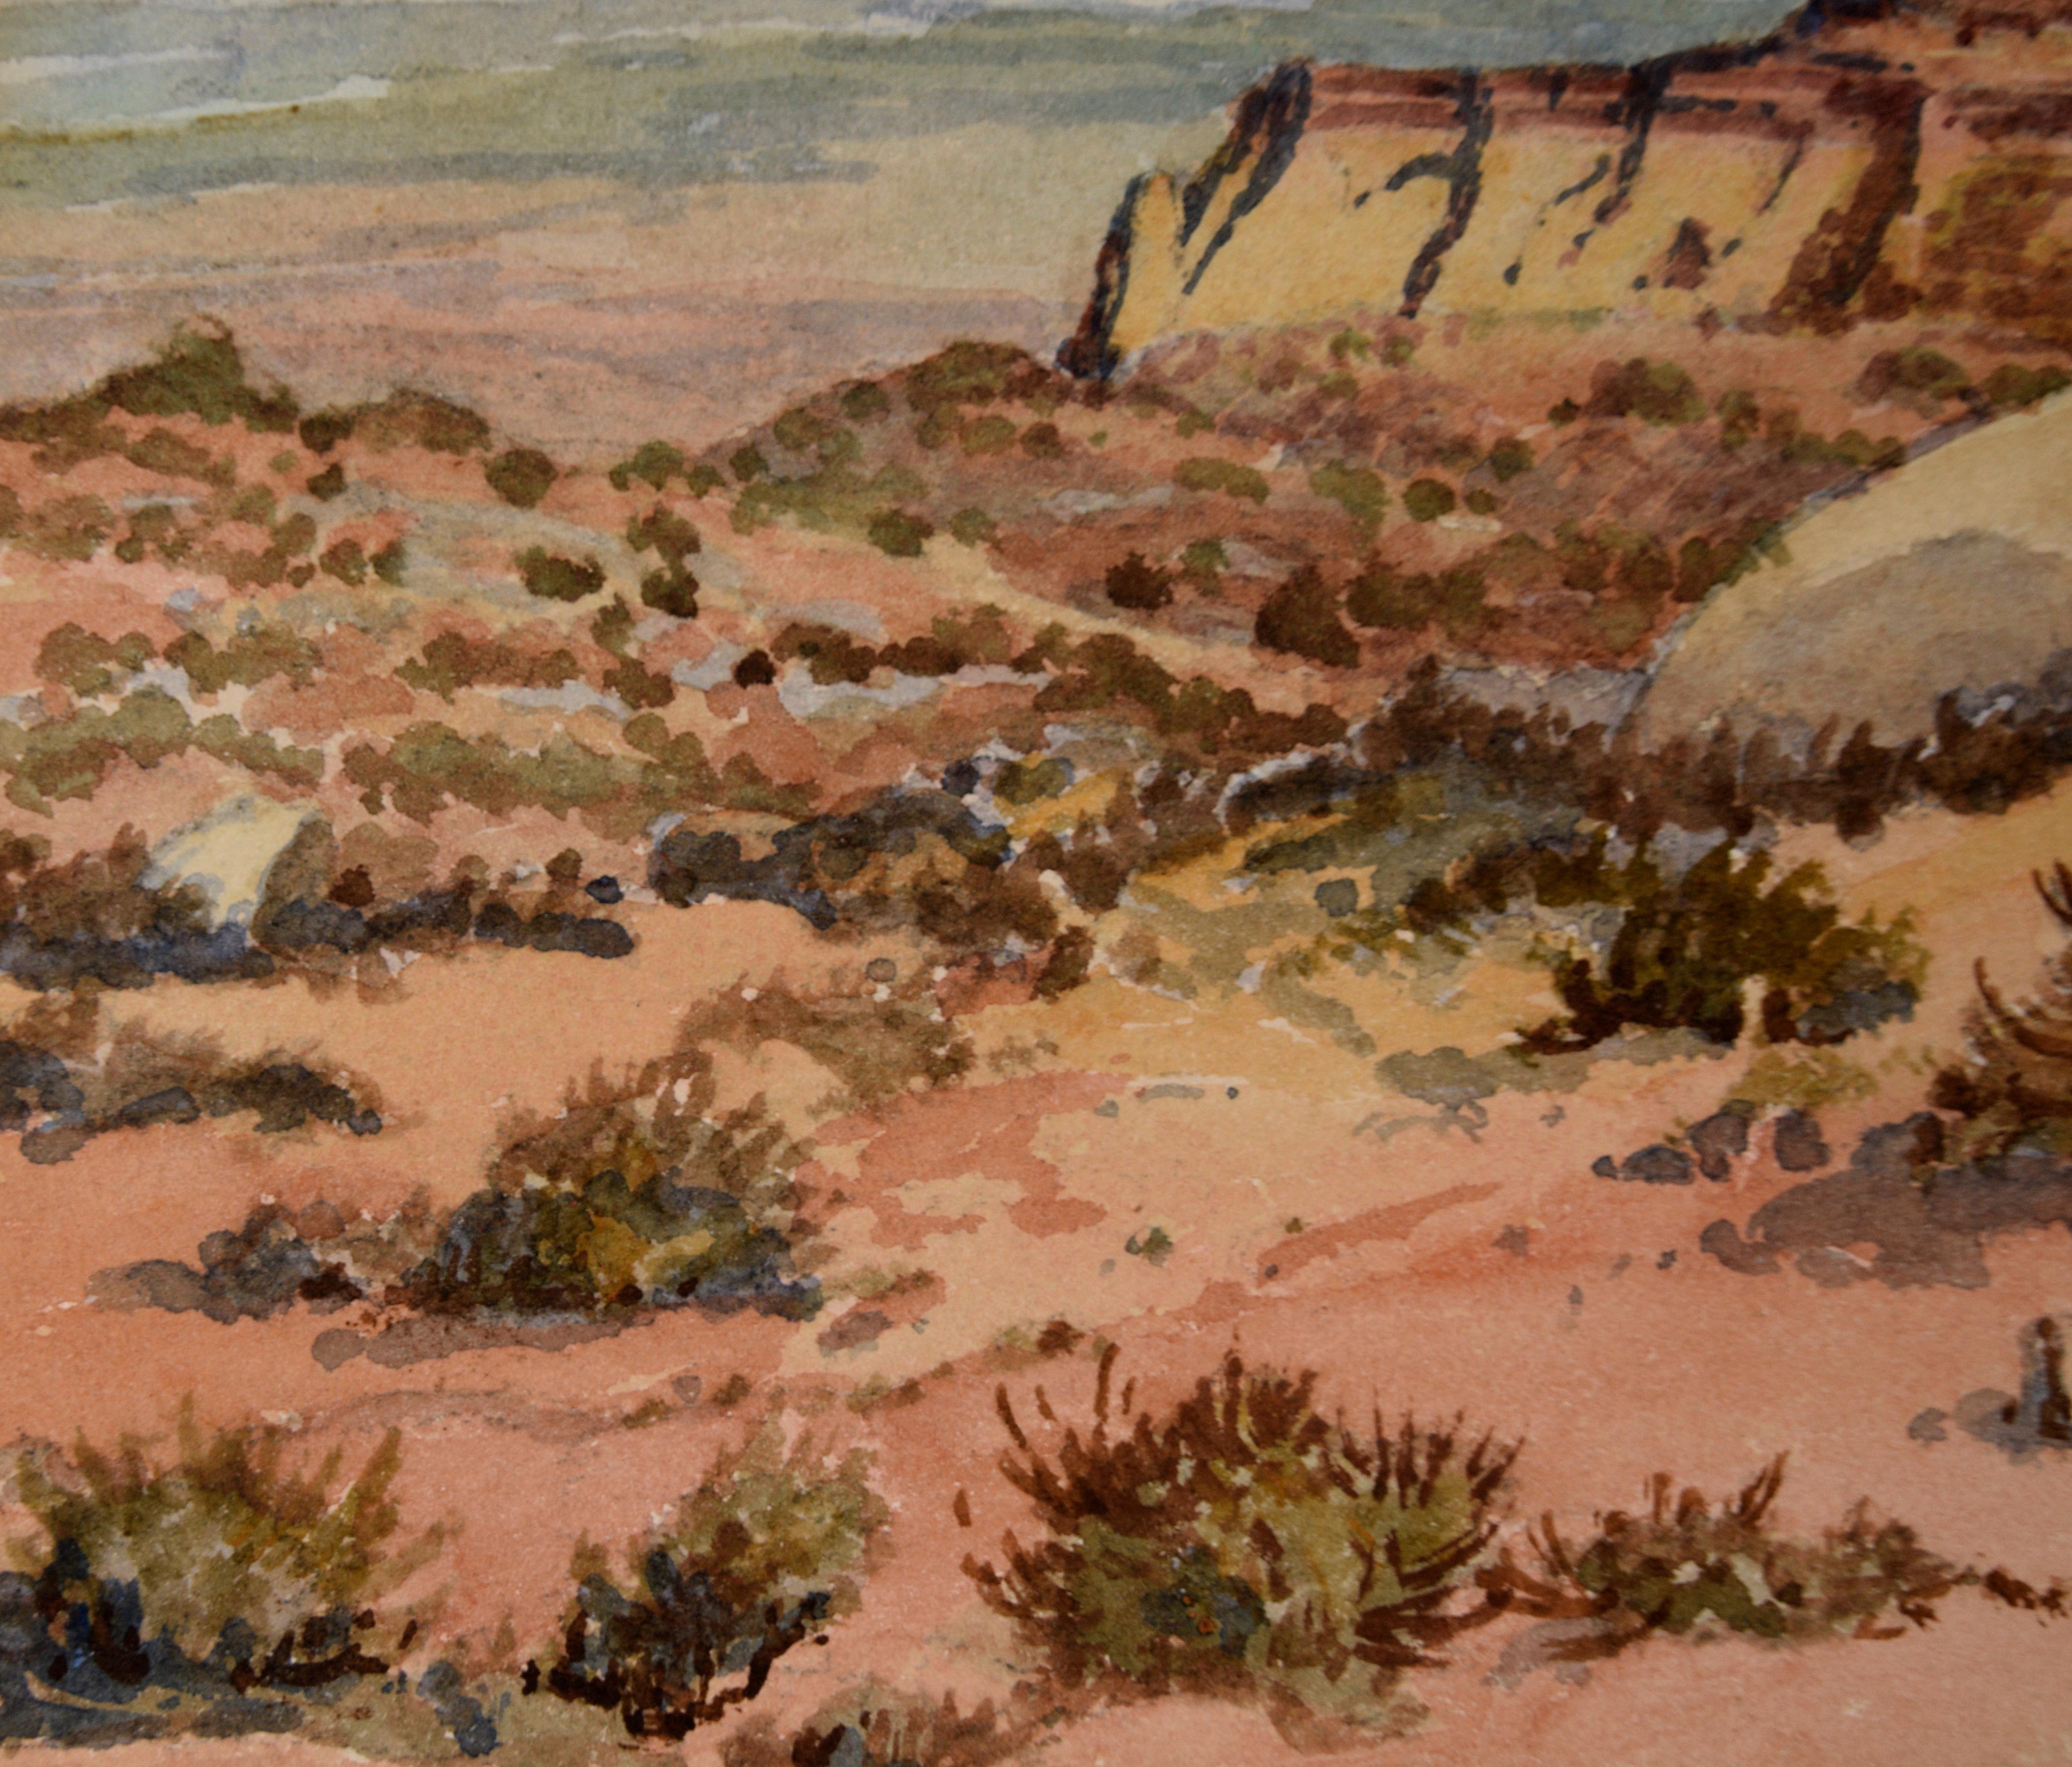 Detailliertes Aquarell des Monument Valley von Albert DeRome (Amerikaner, 1885-1959). Der Betrachter blickt von einem hohen Aussichtspunkt auf das Tal und die hoch aufragenden Tafelberge in der Ferne. Im Vordergrund befinden sich einige Sträucher